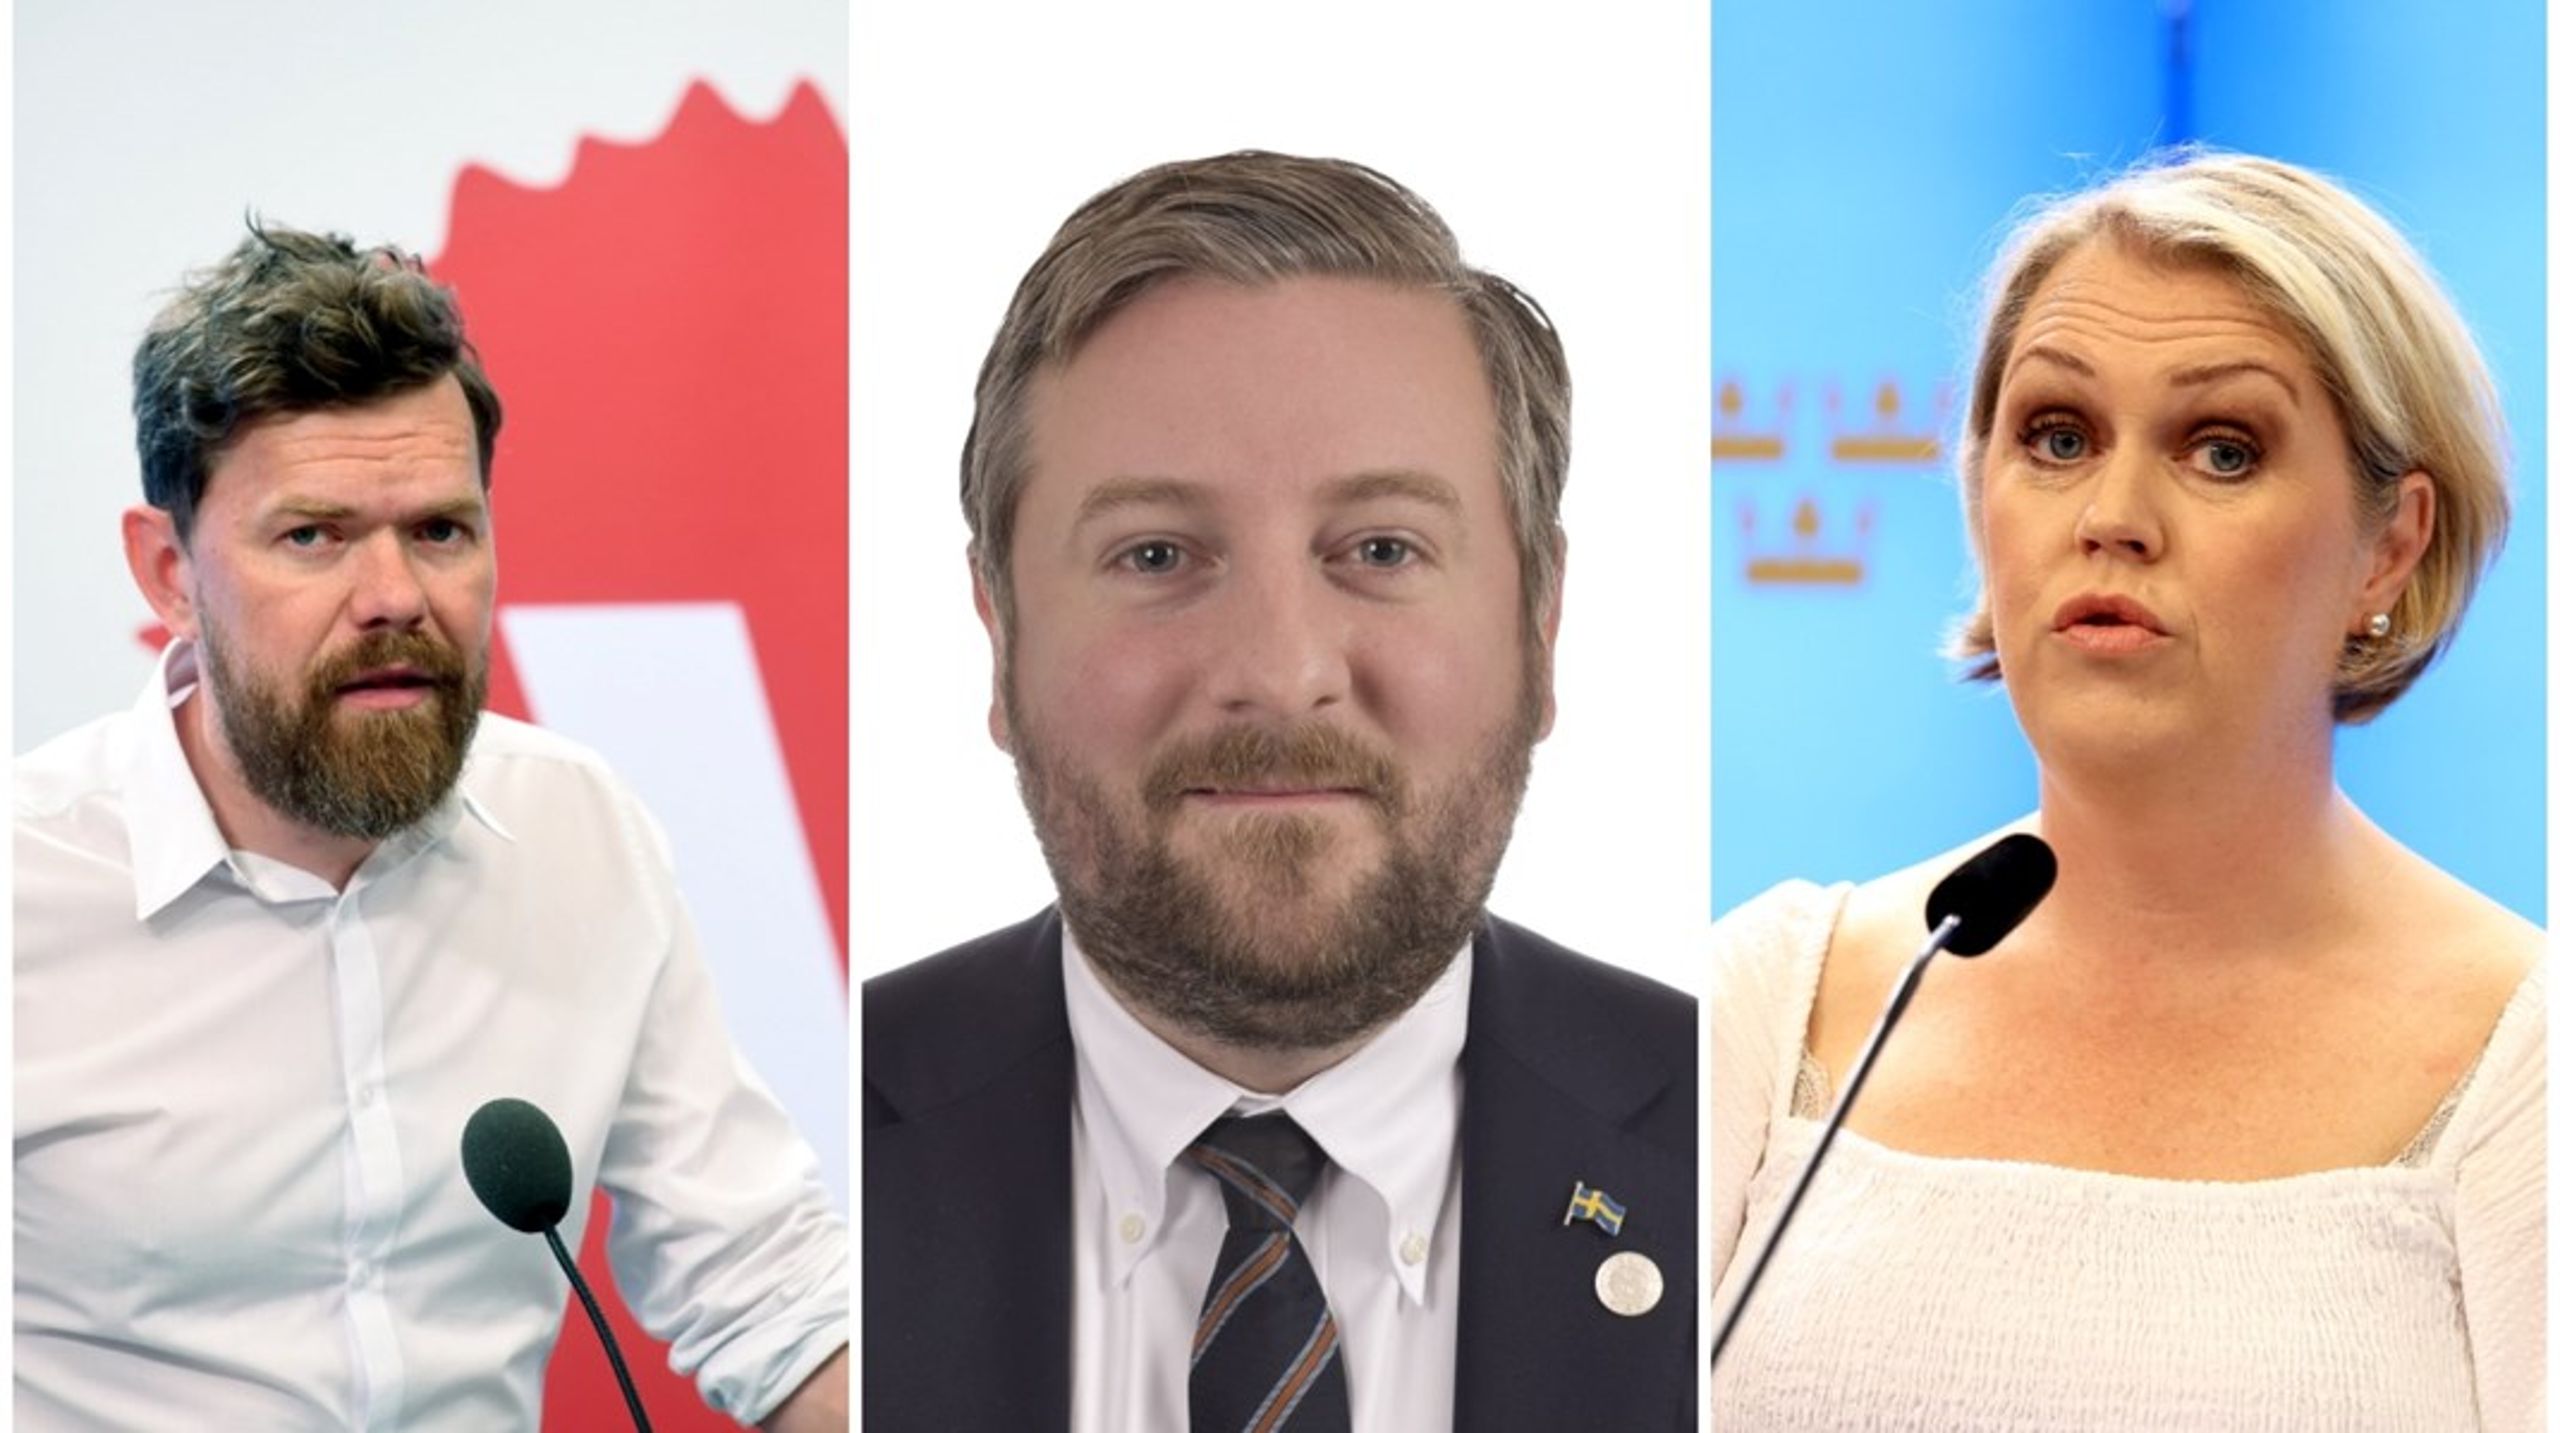 Aron Etzler (V), Lena Hallengren (S) och&nbsp;Fredrik Lindahl (SD) är tre av de som nominerats att se över frågan om partiers finansiering.&nbsp;